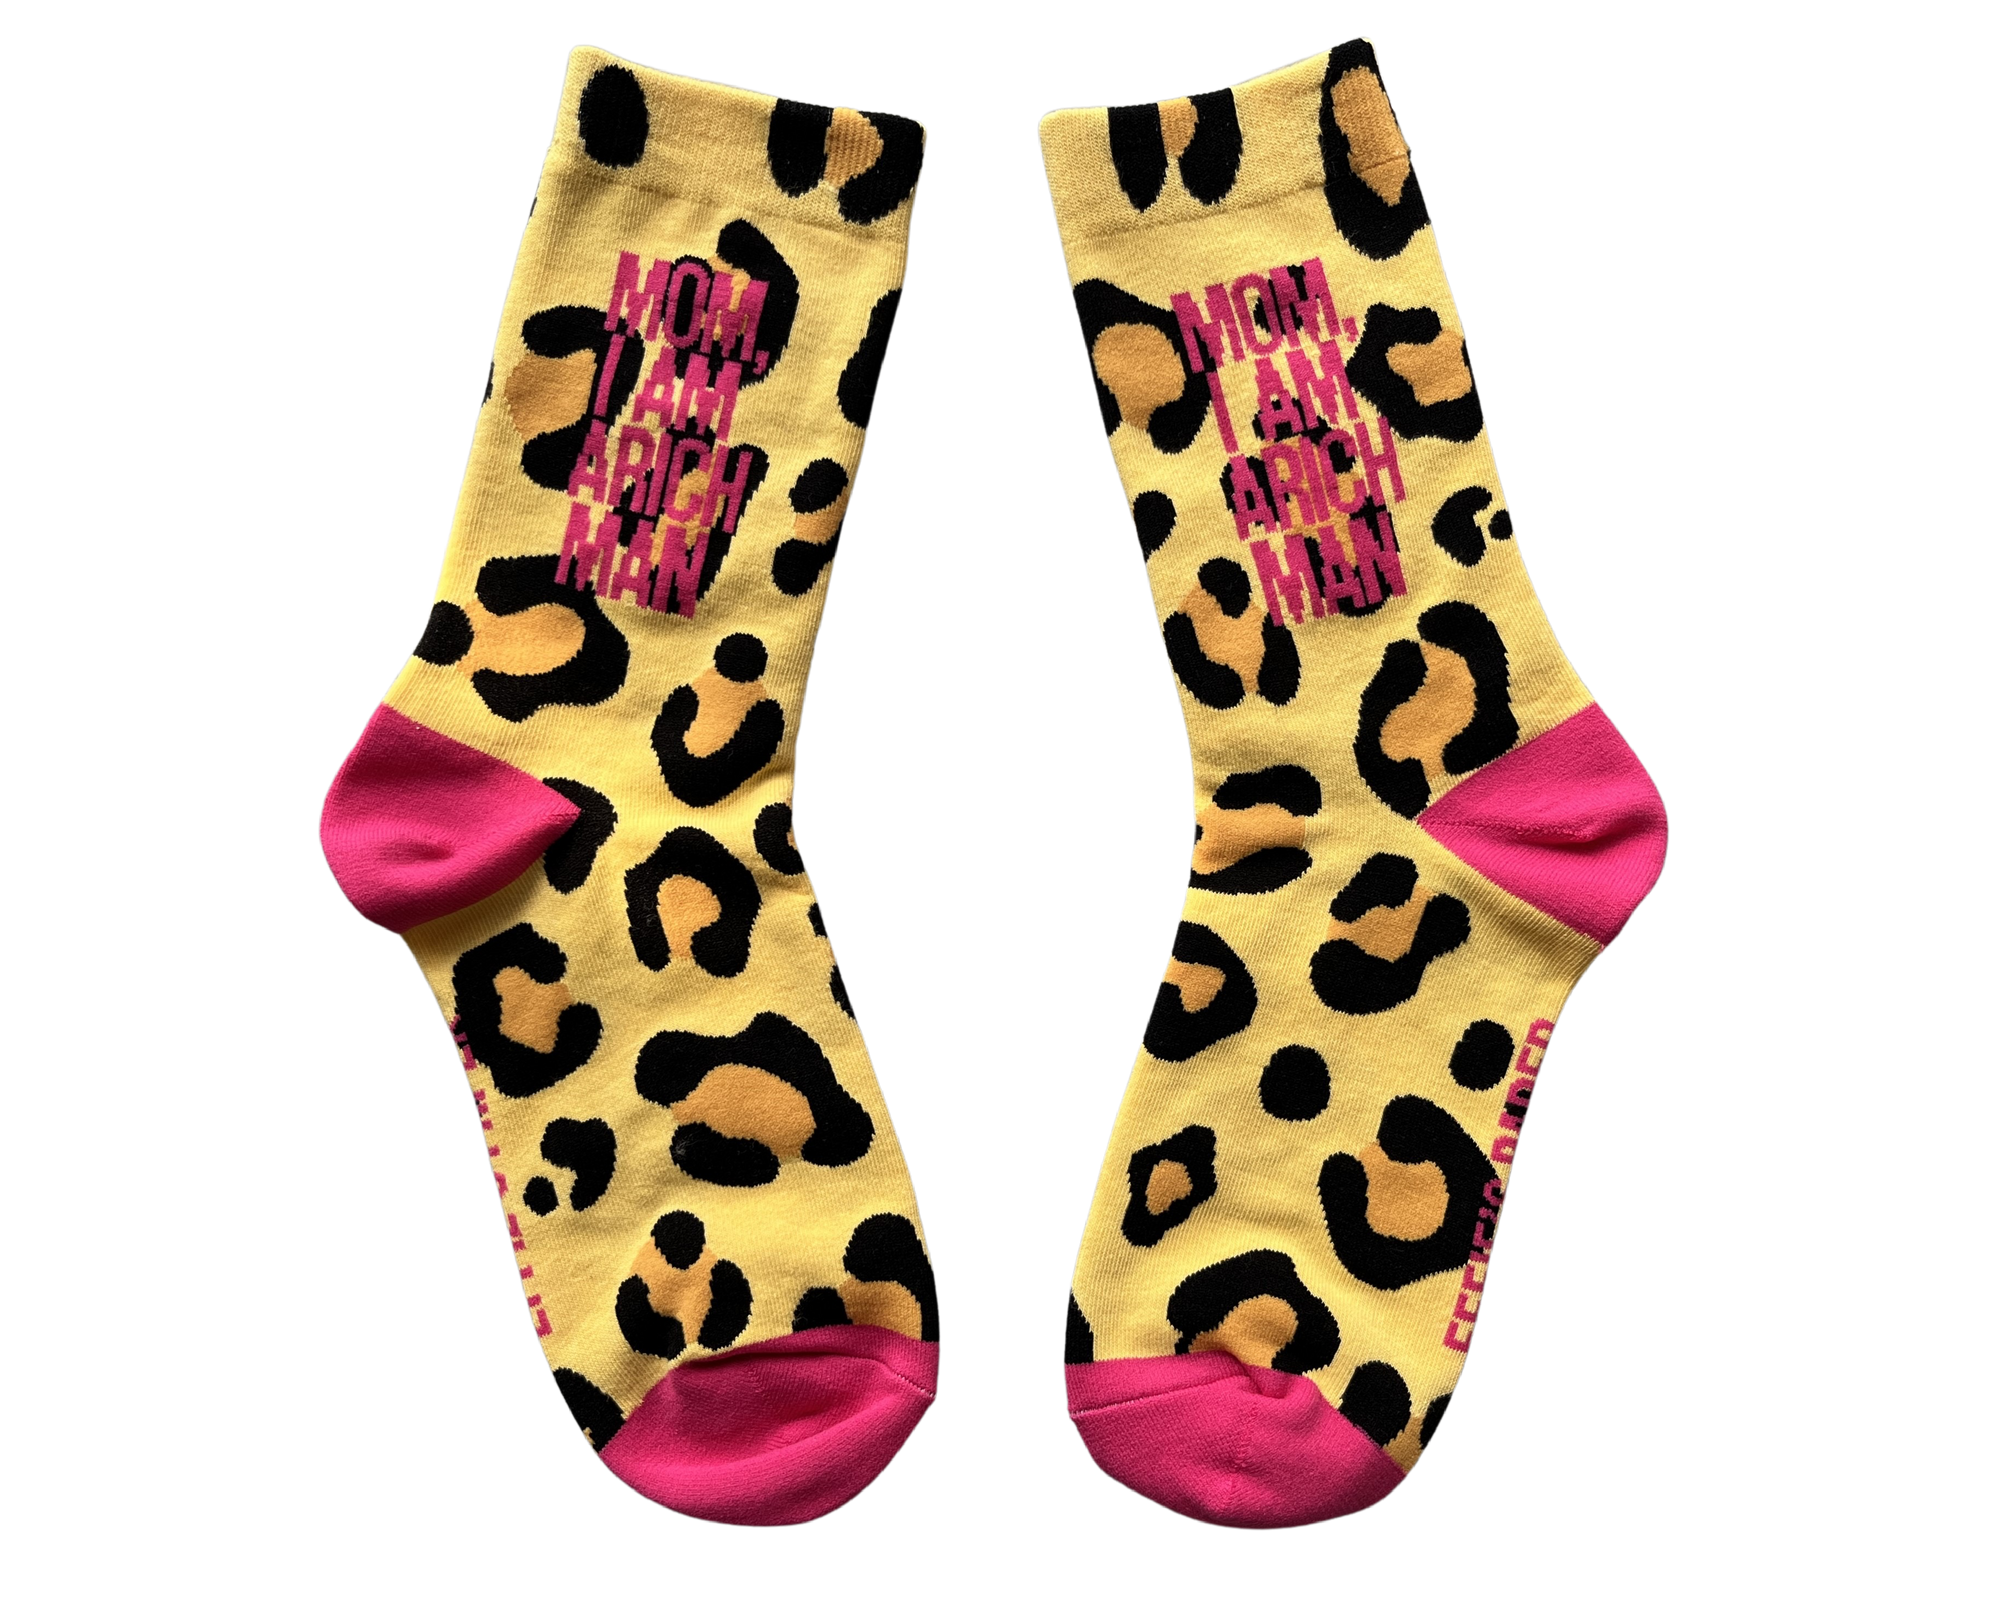 Mom, I Am A Rich Man (Leopard Print) Socks